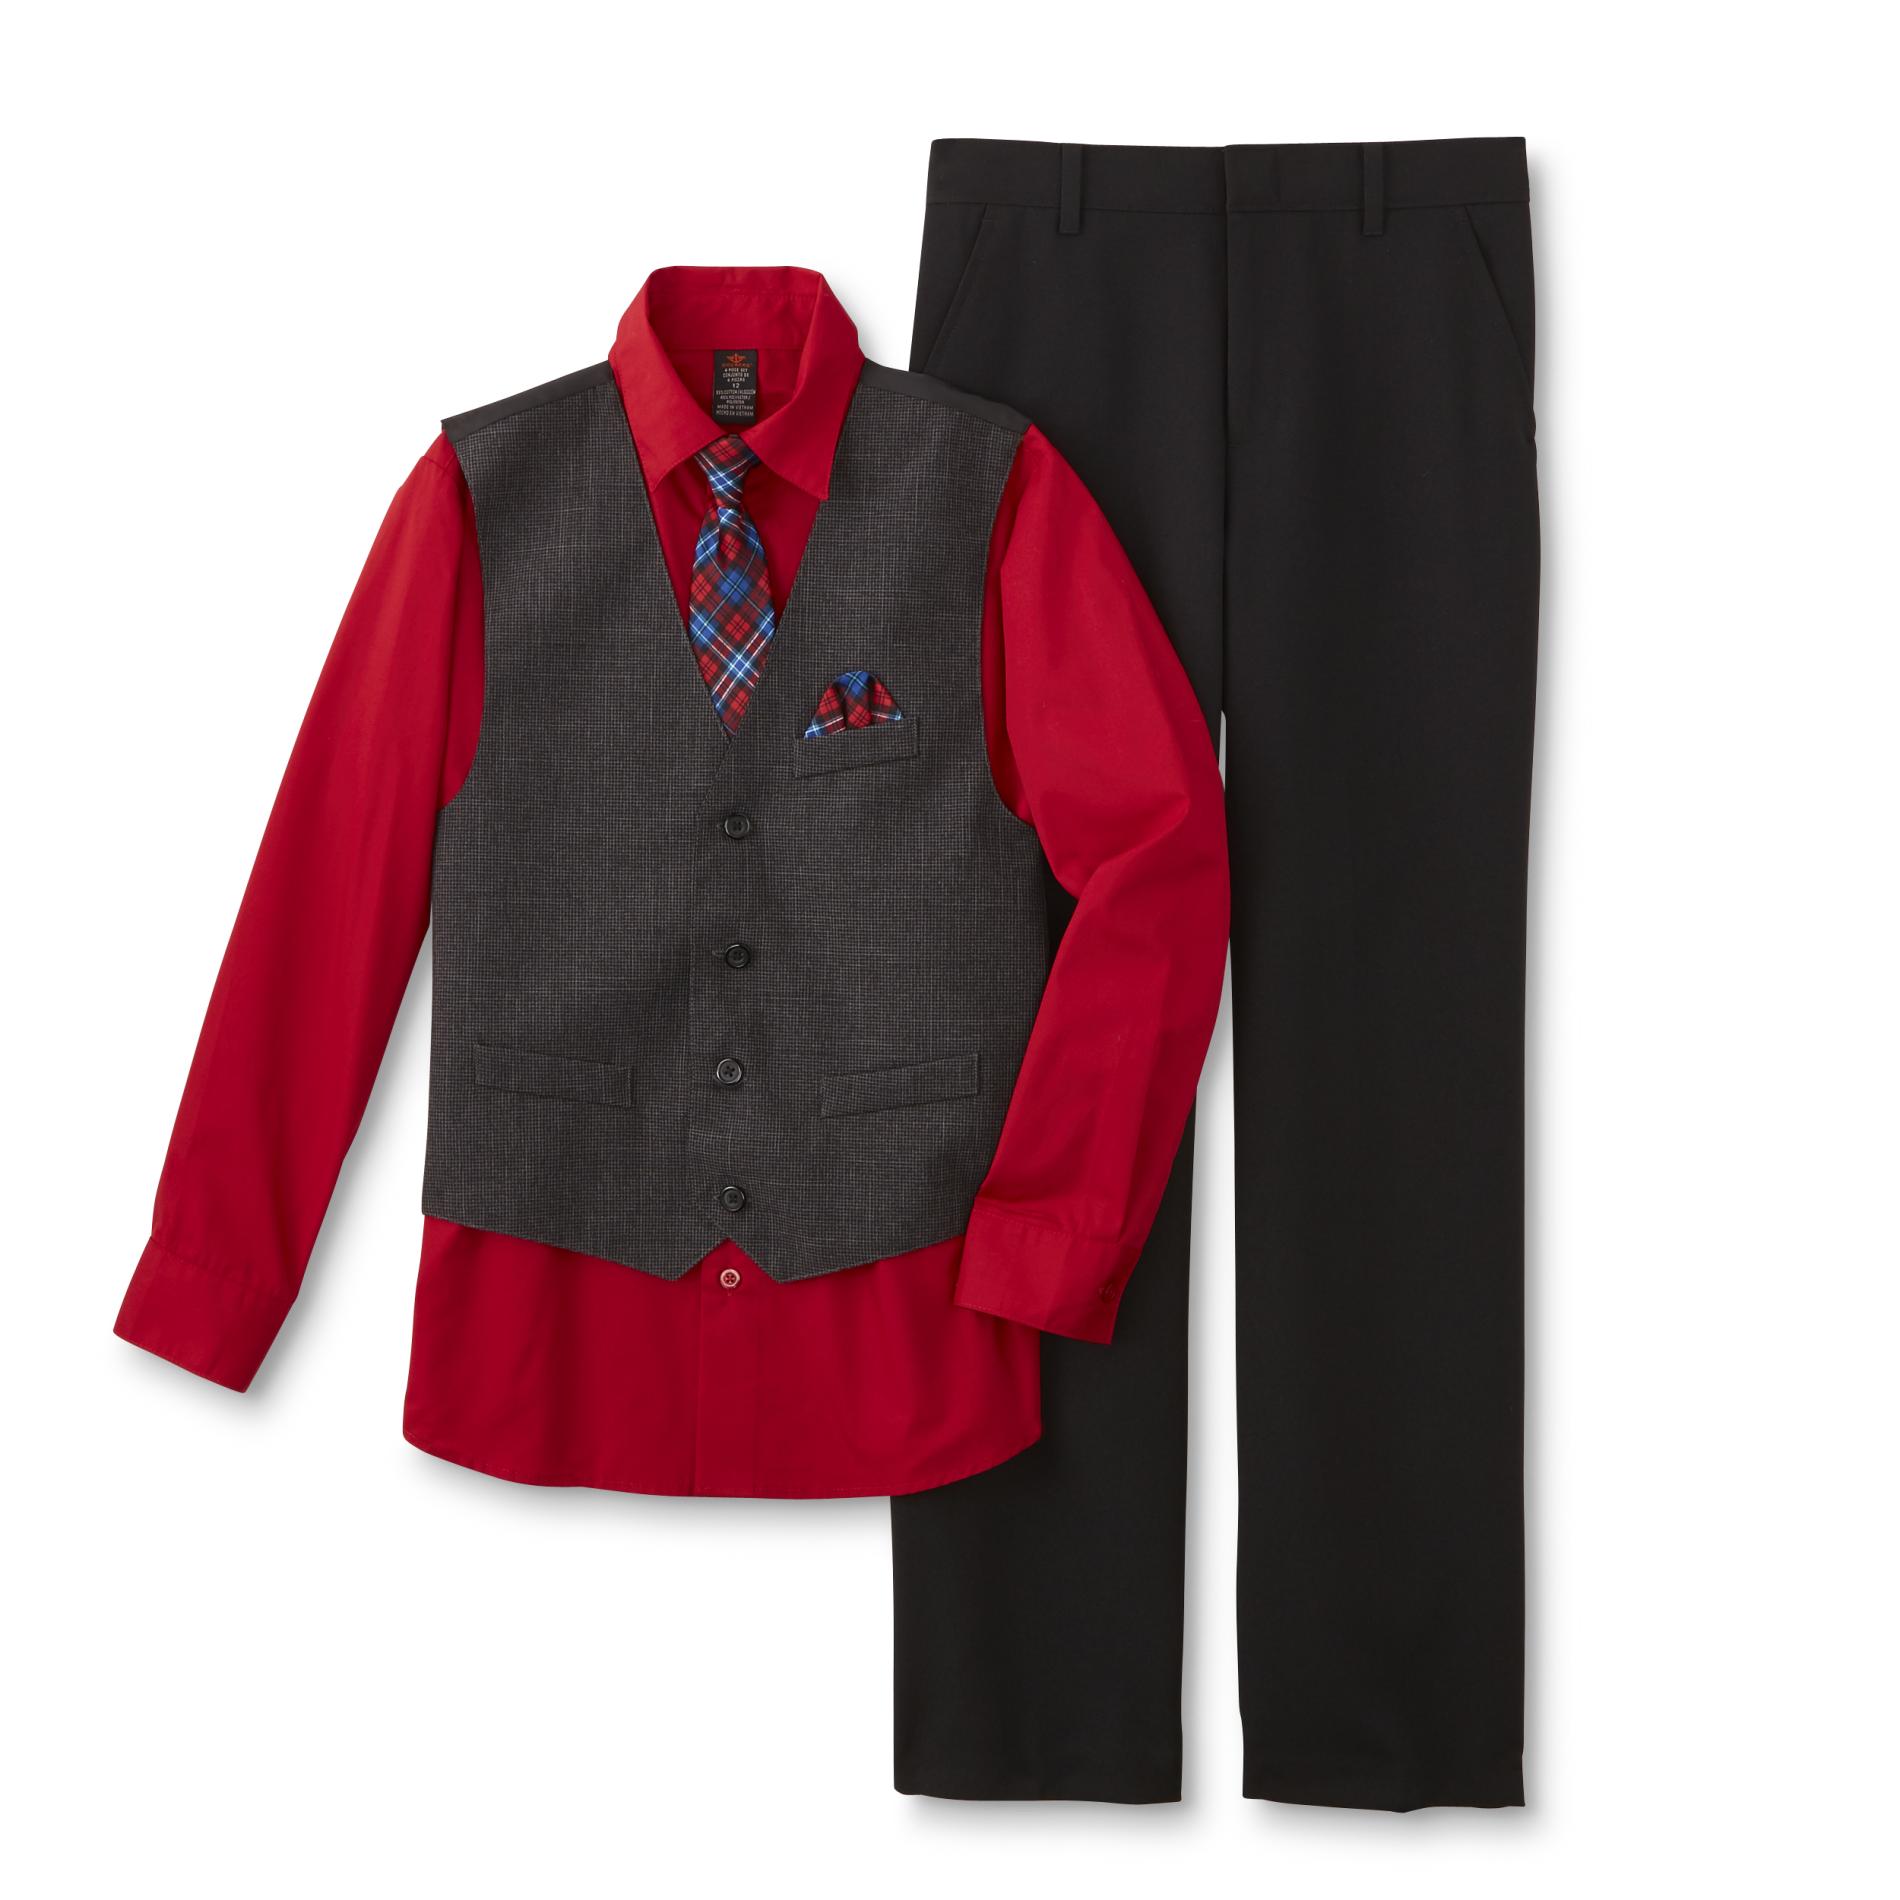 Dockers Boys' Necktie, Vest, Dress Shirt & Pants - Plaid